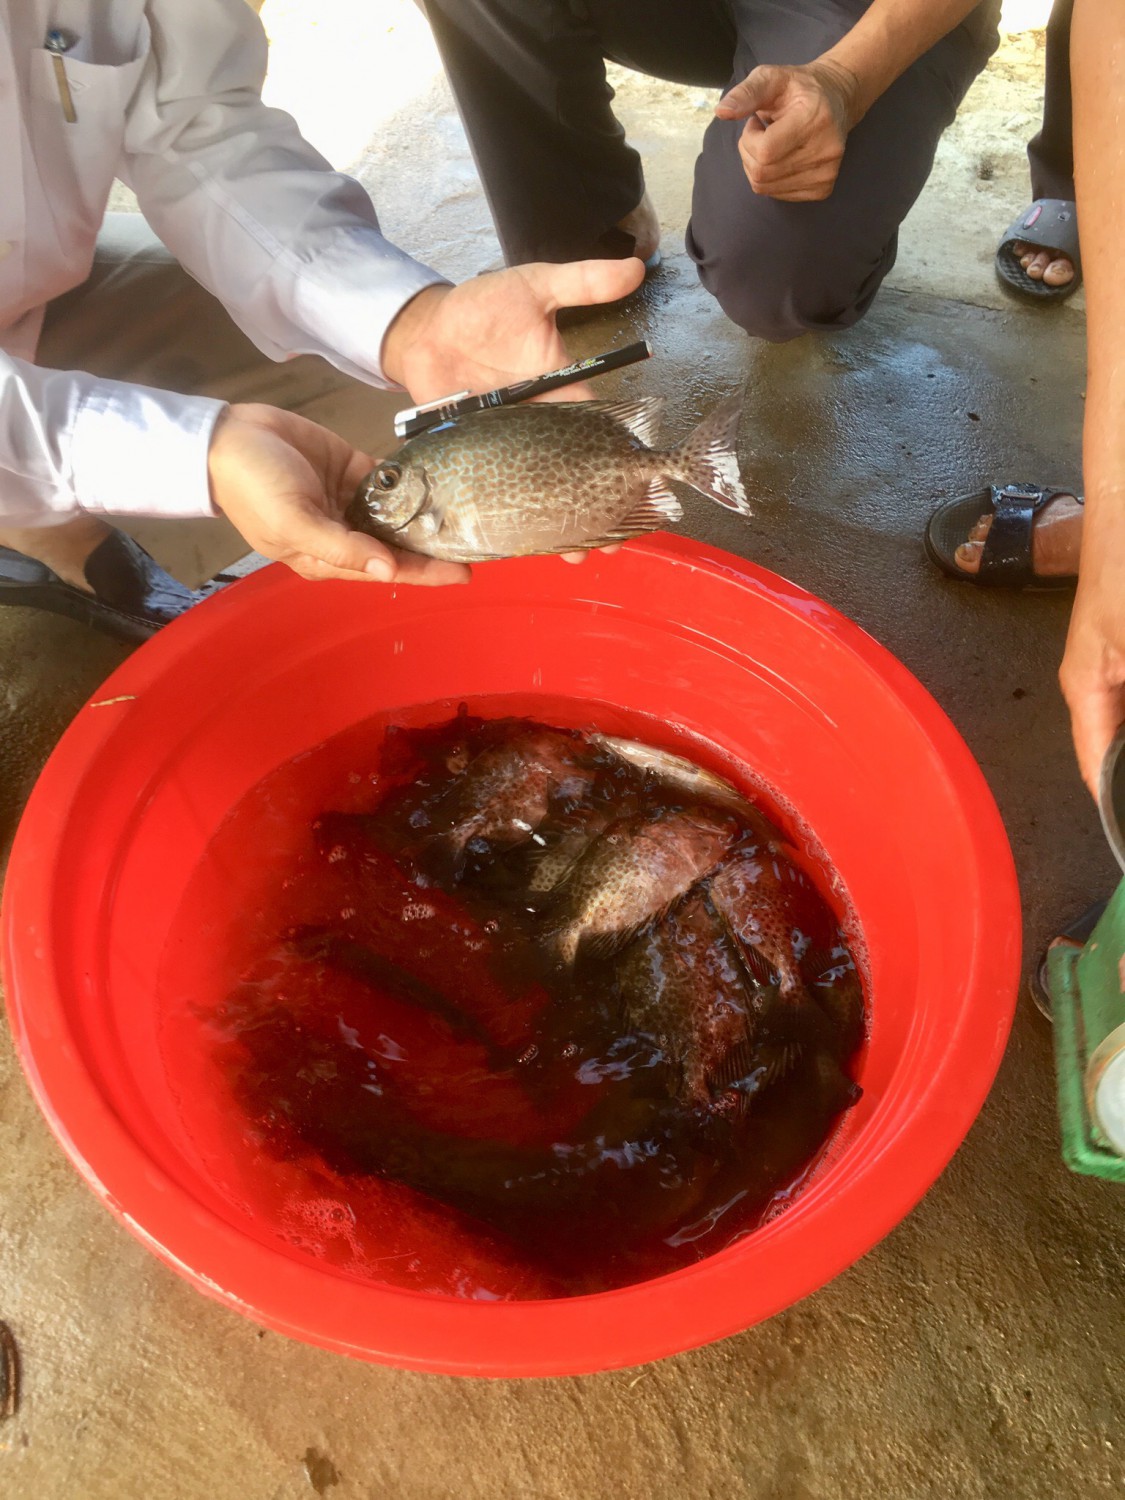 Nuôi cá dìa đặc sản trong ao nuôi tôm kém hiệu quả, nông dân Quảng Trị lãi hàng chục triệu/vụ - Ảnh 1.